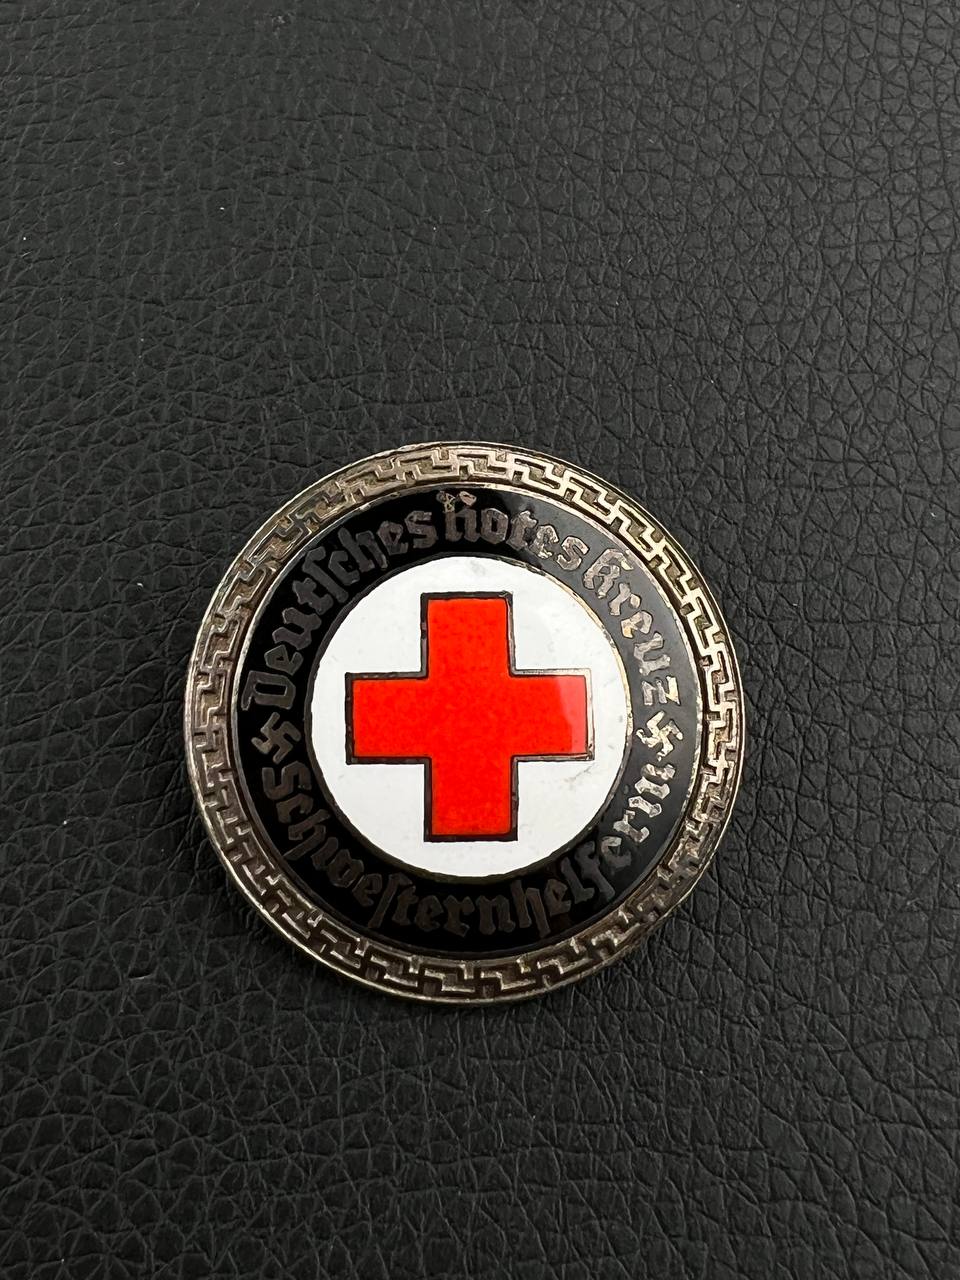 Нагрудный знак старшей медсестры Немецкого Красного креста(DRK). От Алексея С.